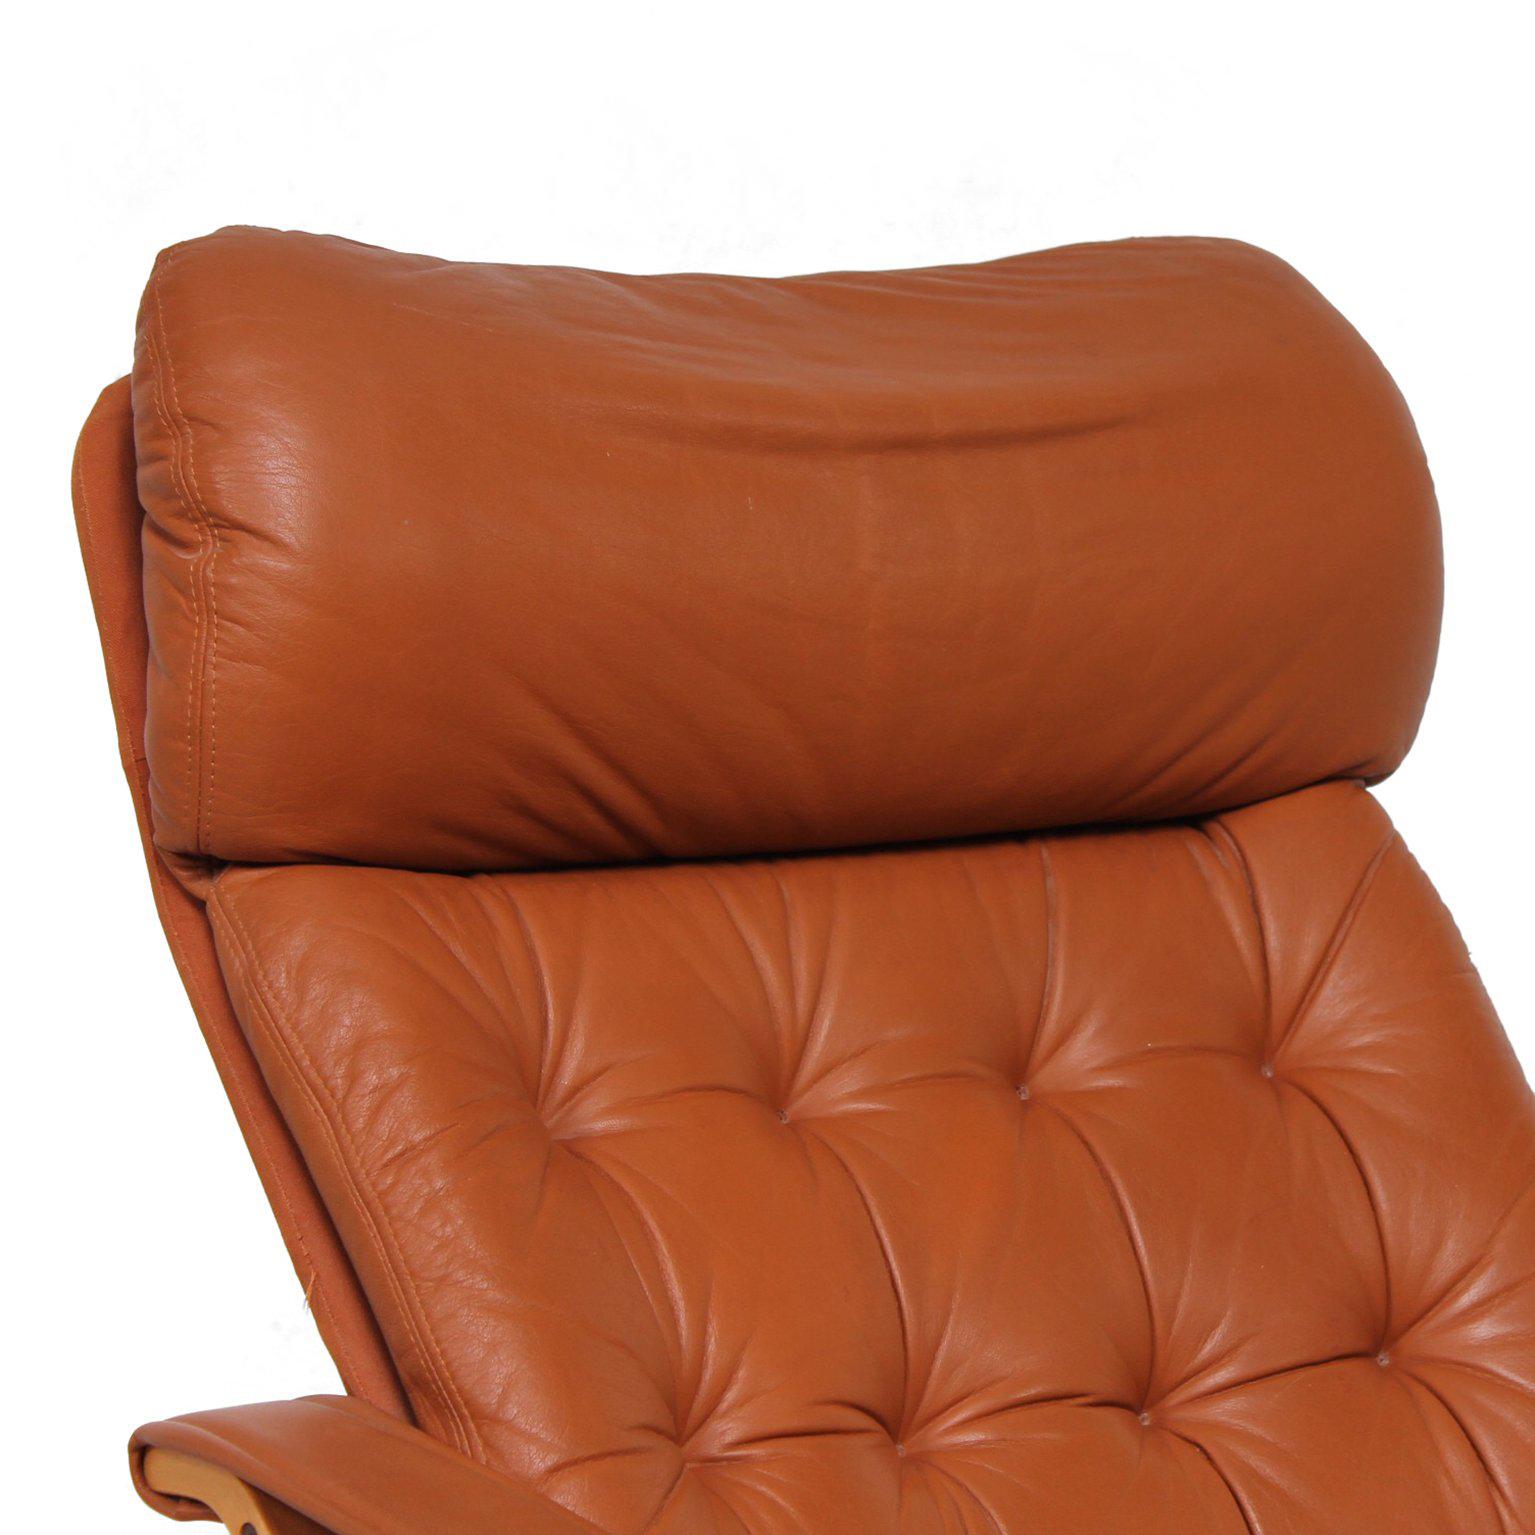 Pour votre considération, un fauteuil moderne danois à haut dossier de style Mid-Century fabriqué en Finlande. Aucune étiquette d'origine n'est présente. 

Fabricant : BD Furniture. Hounekalutehdas-mobelfabrik. OY BJ. Dahlqvist AB, Finlande. Box